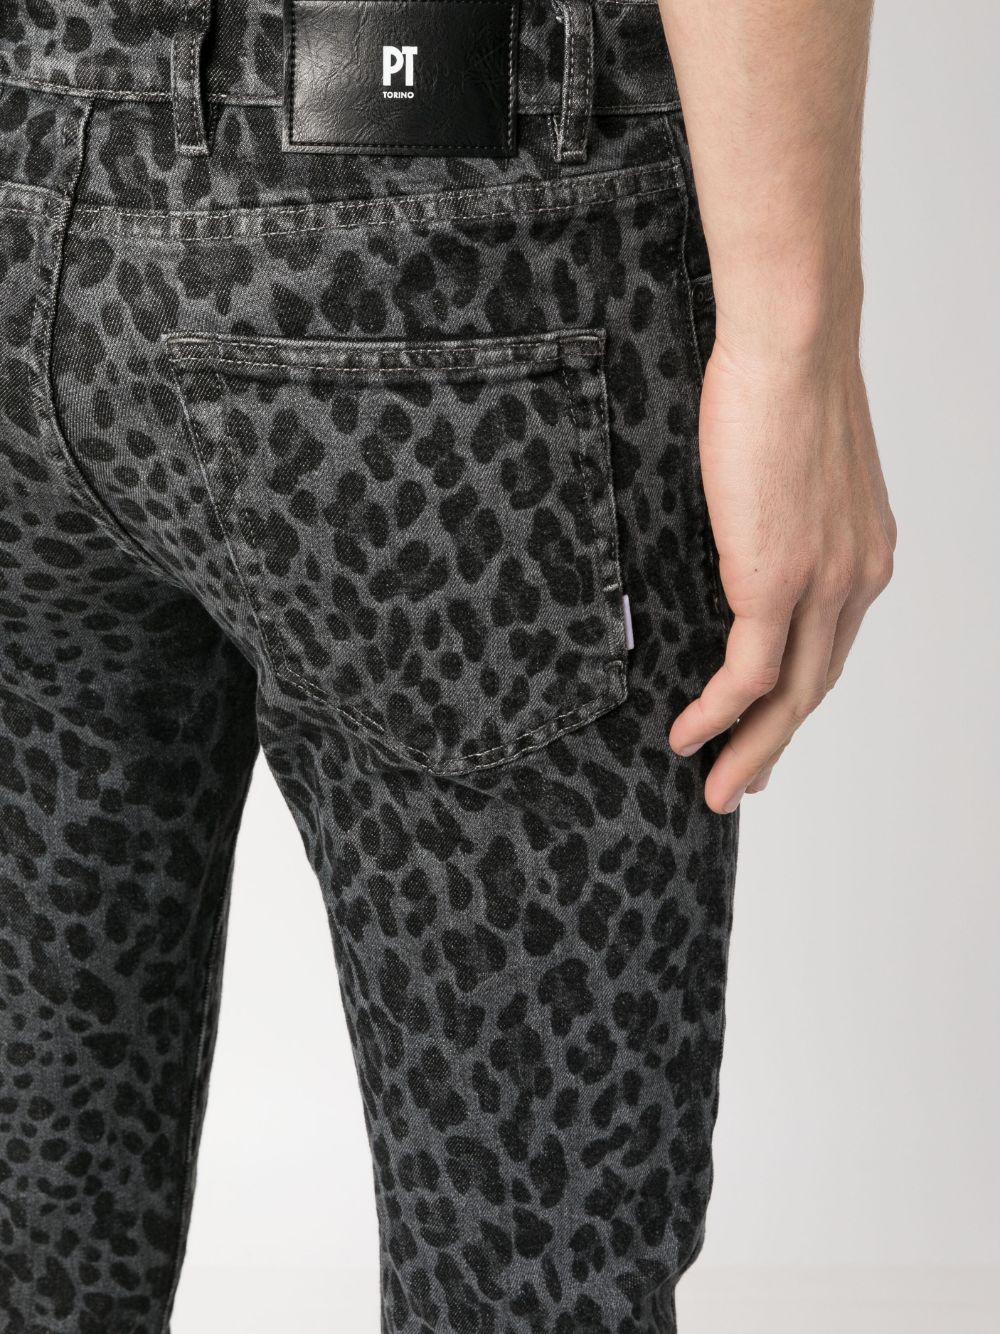 PT Torino Leopard-print Skinny Jeans in Blue for Men | Lyst